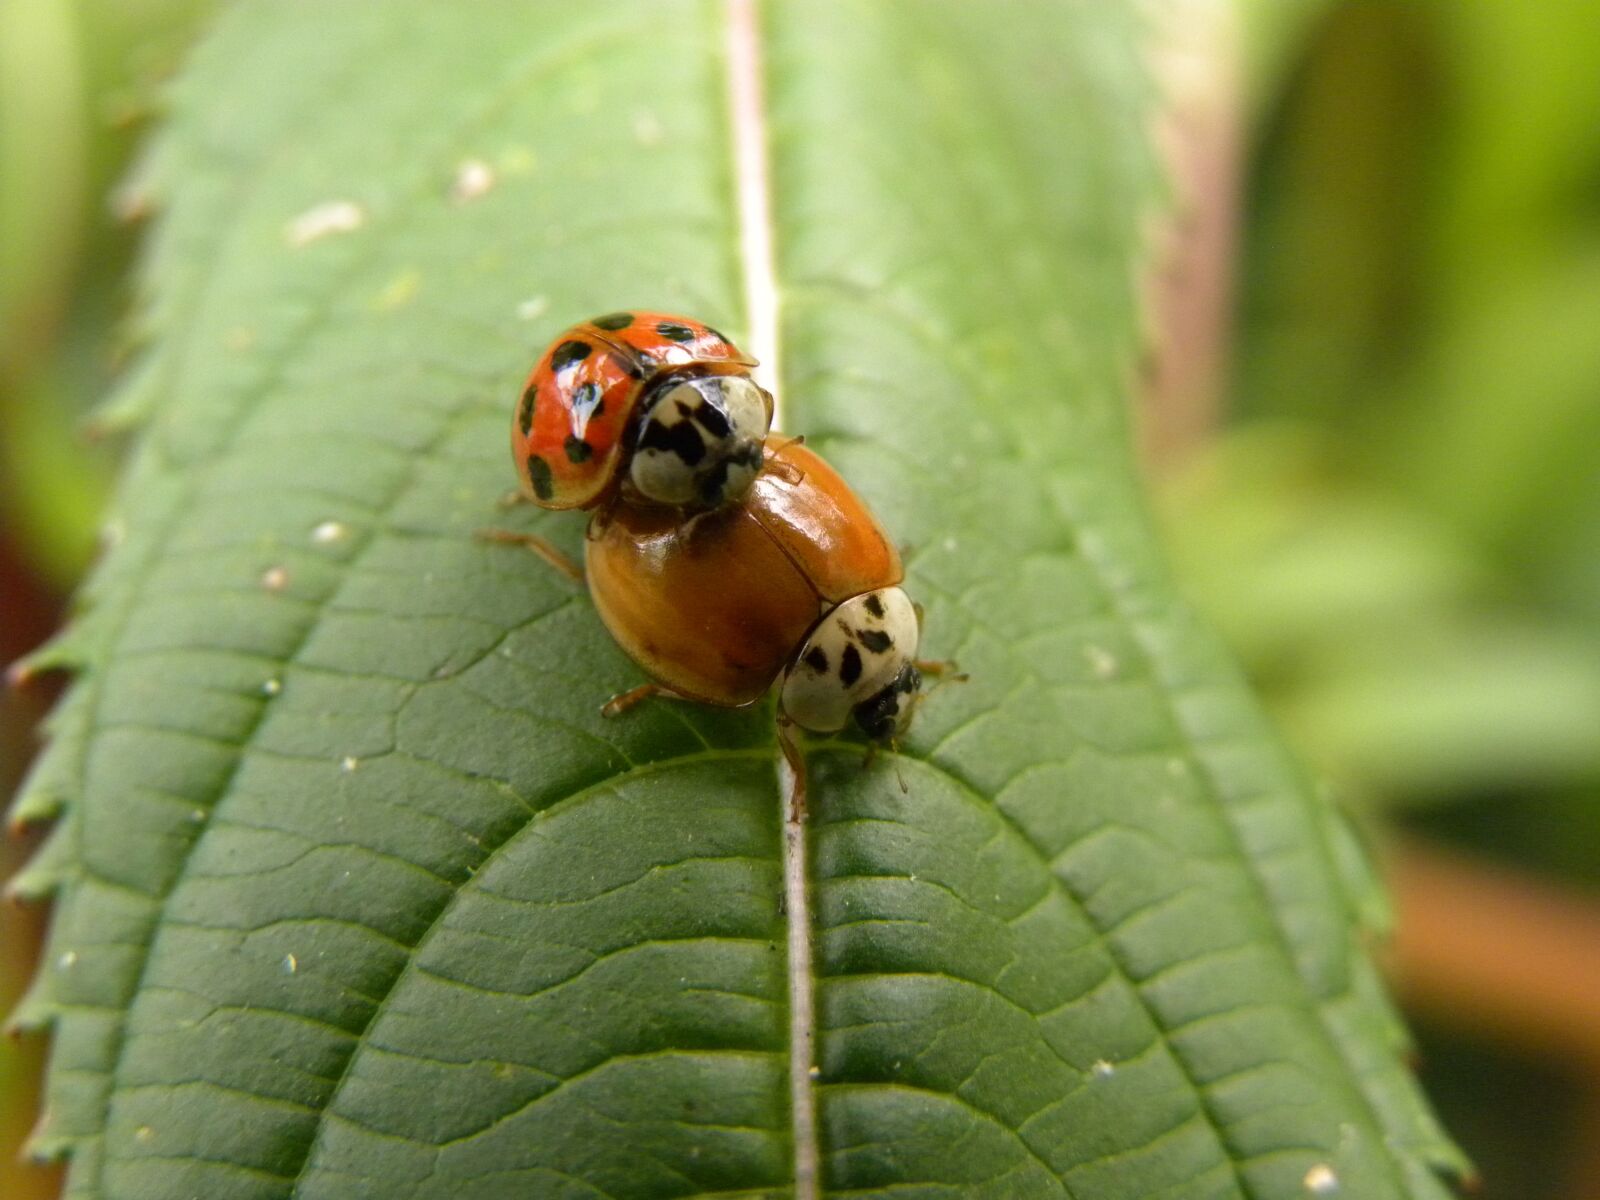 Nikon Coolpix P90 sample photo. Beetle, macro, ladybug photography